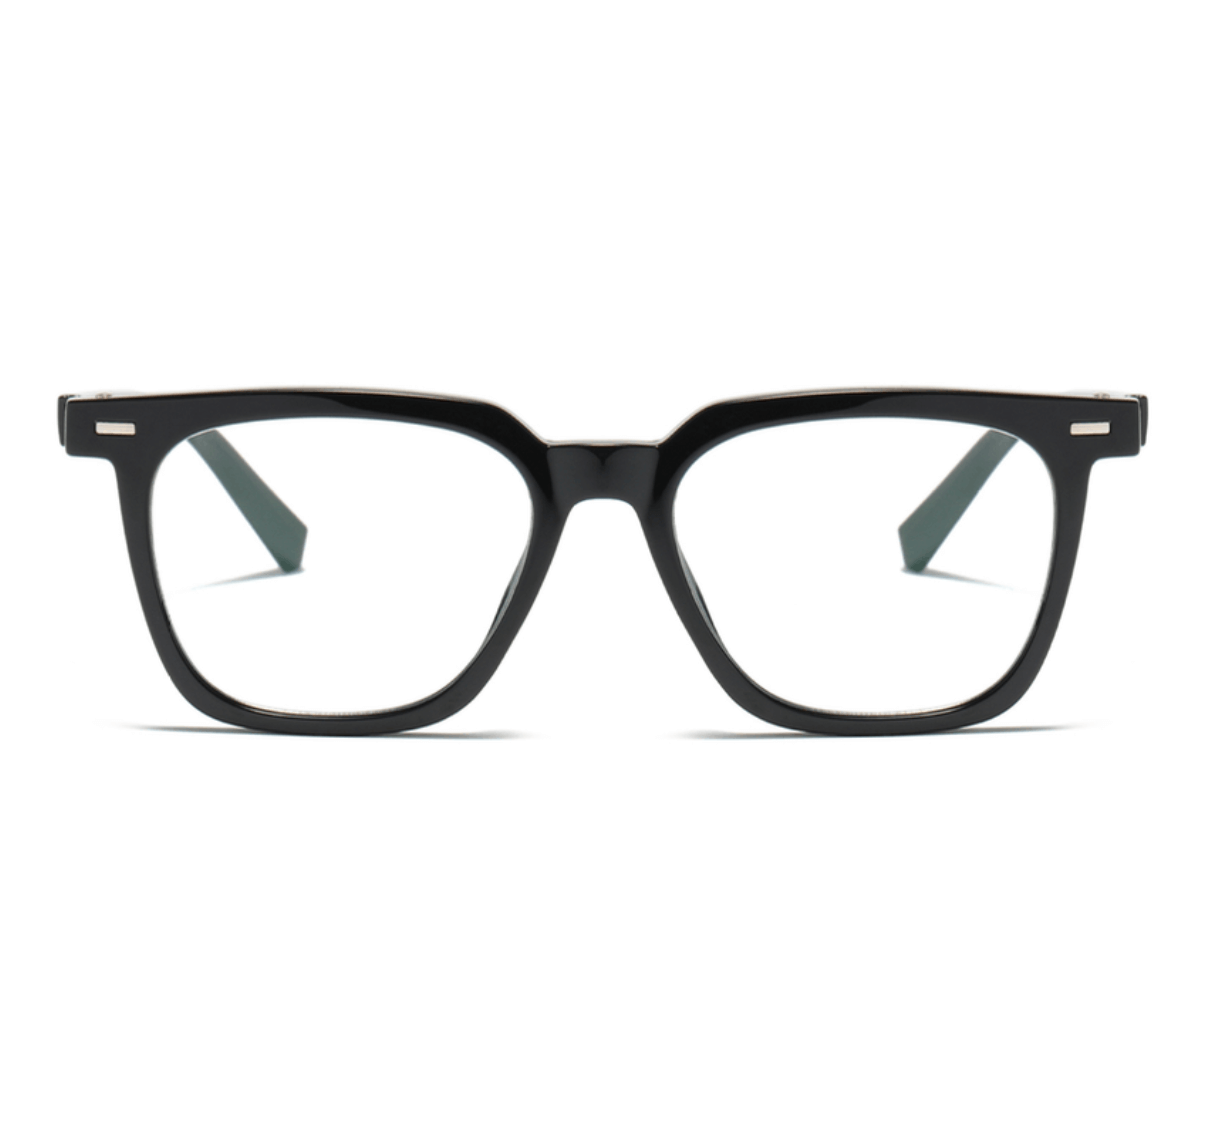 TR90 Glasses Frames, wholesale optical frames